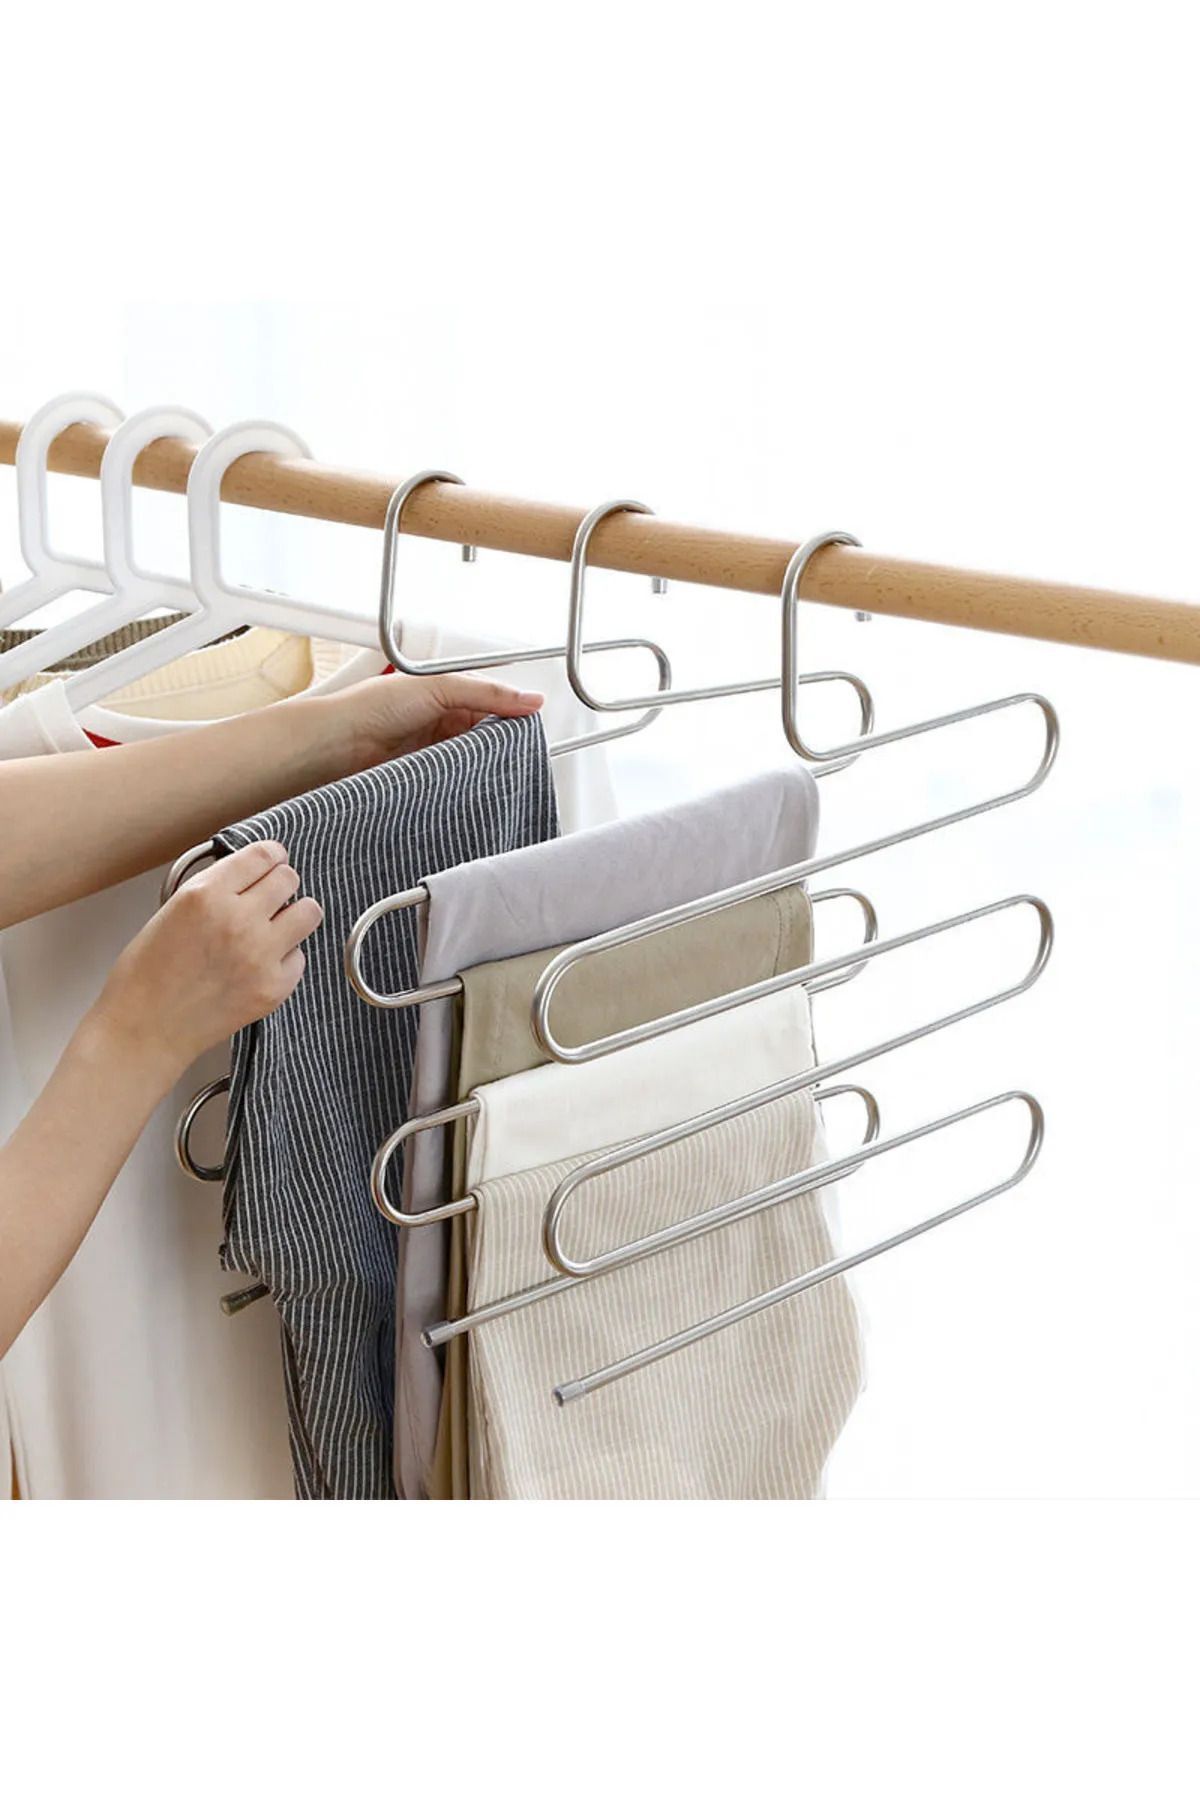 seç al burada 5 Katlı Metal Elbise Askısı - Giysi Pantalon Eşarp Fular Düzenleyici Çok Amaçlı 3 Adet